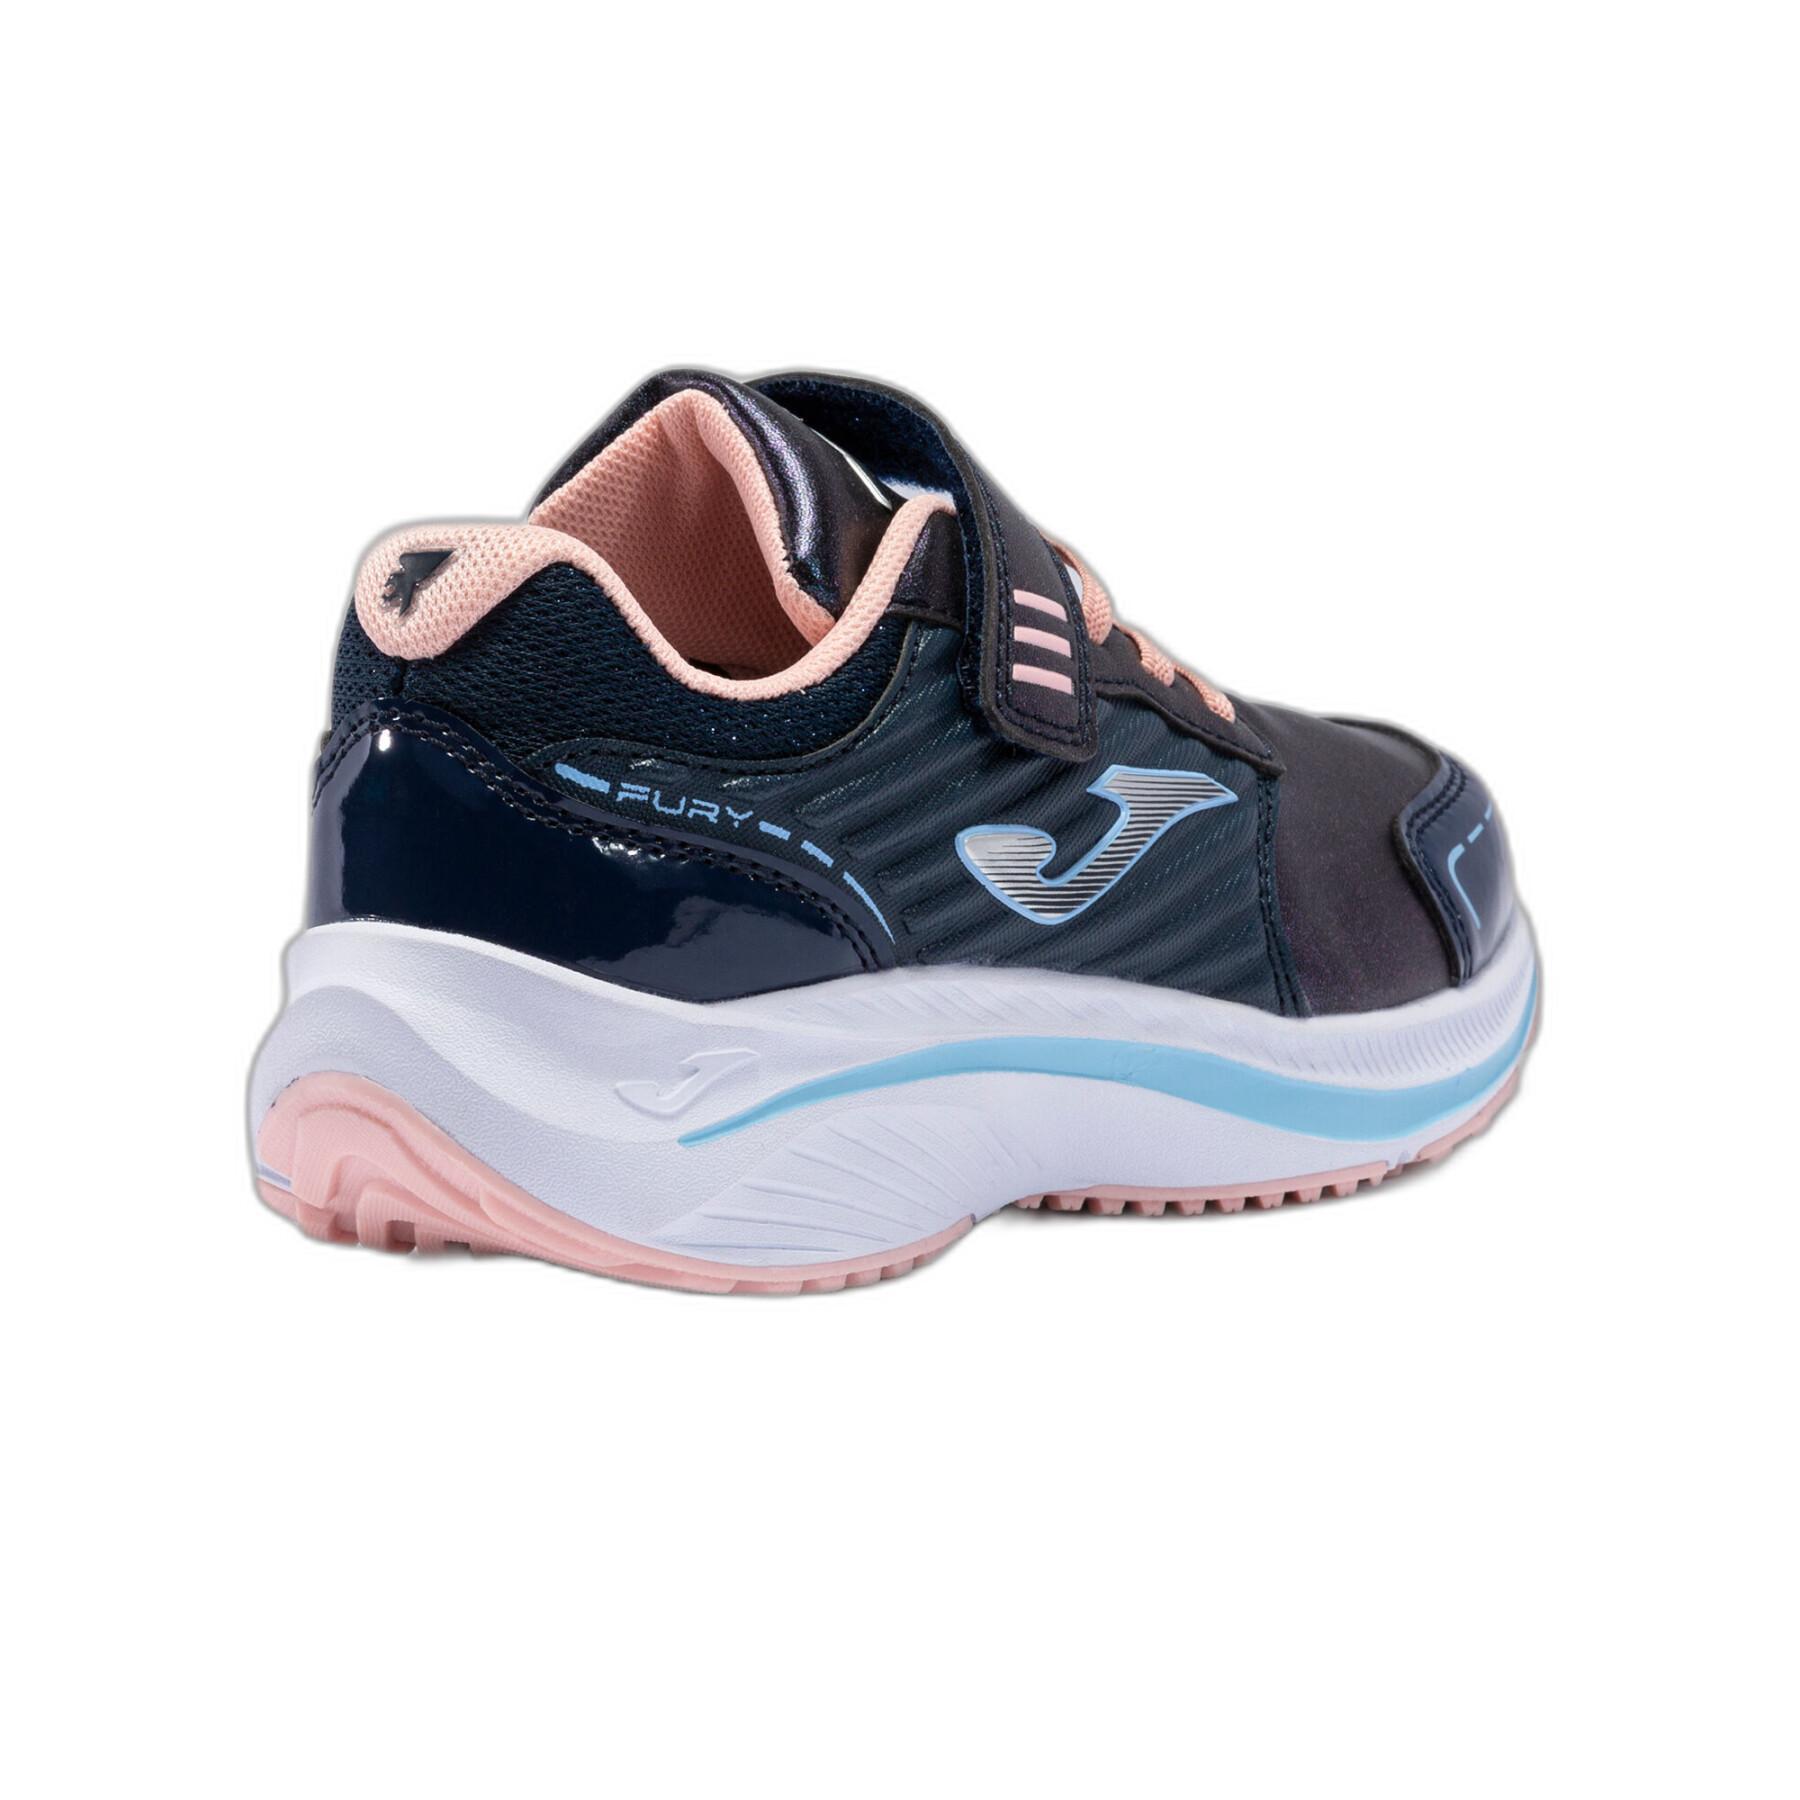 Children's running shoes Joma Fury 2243